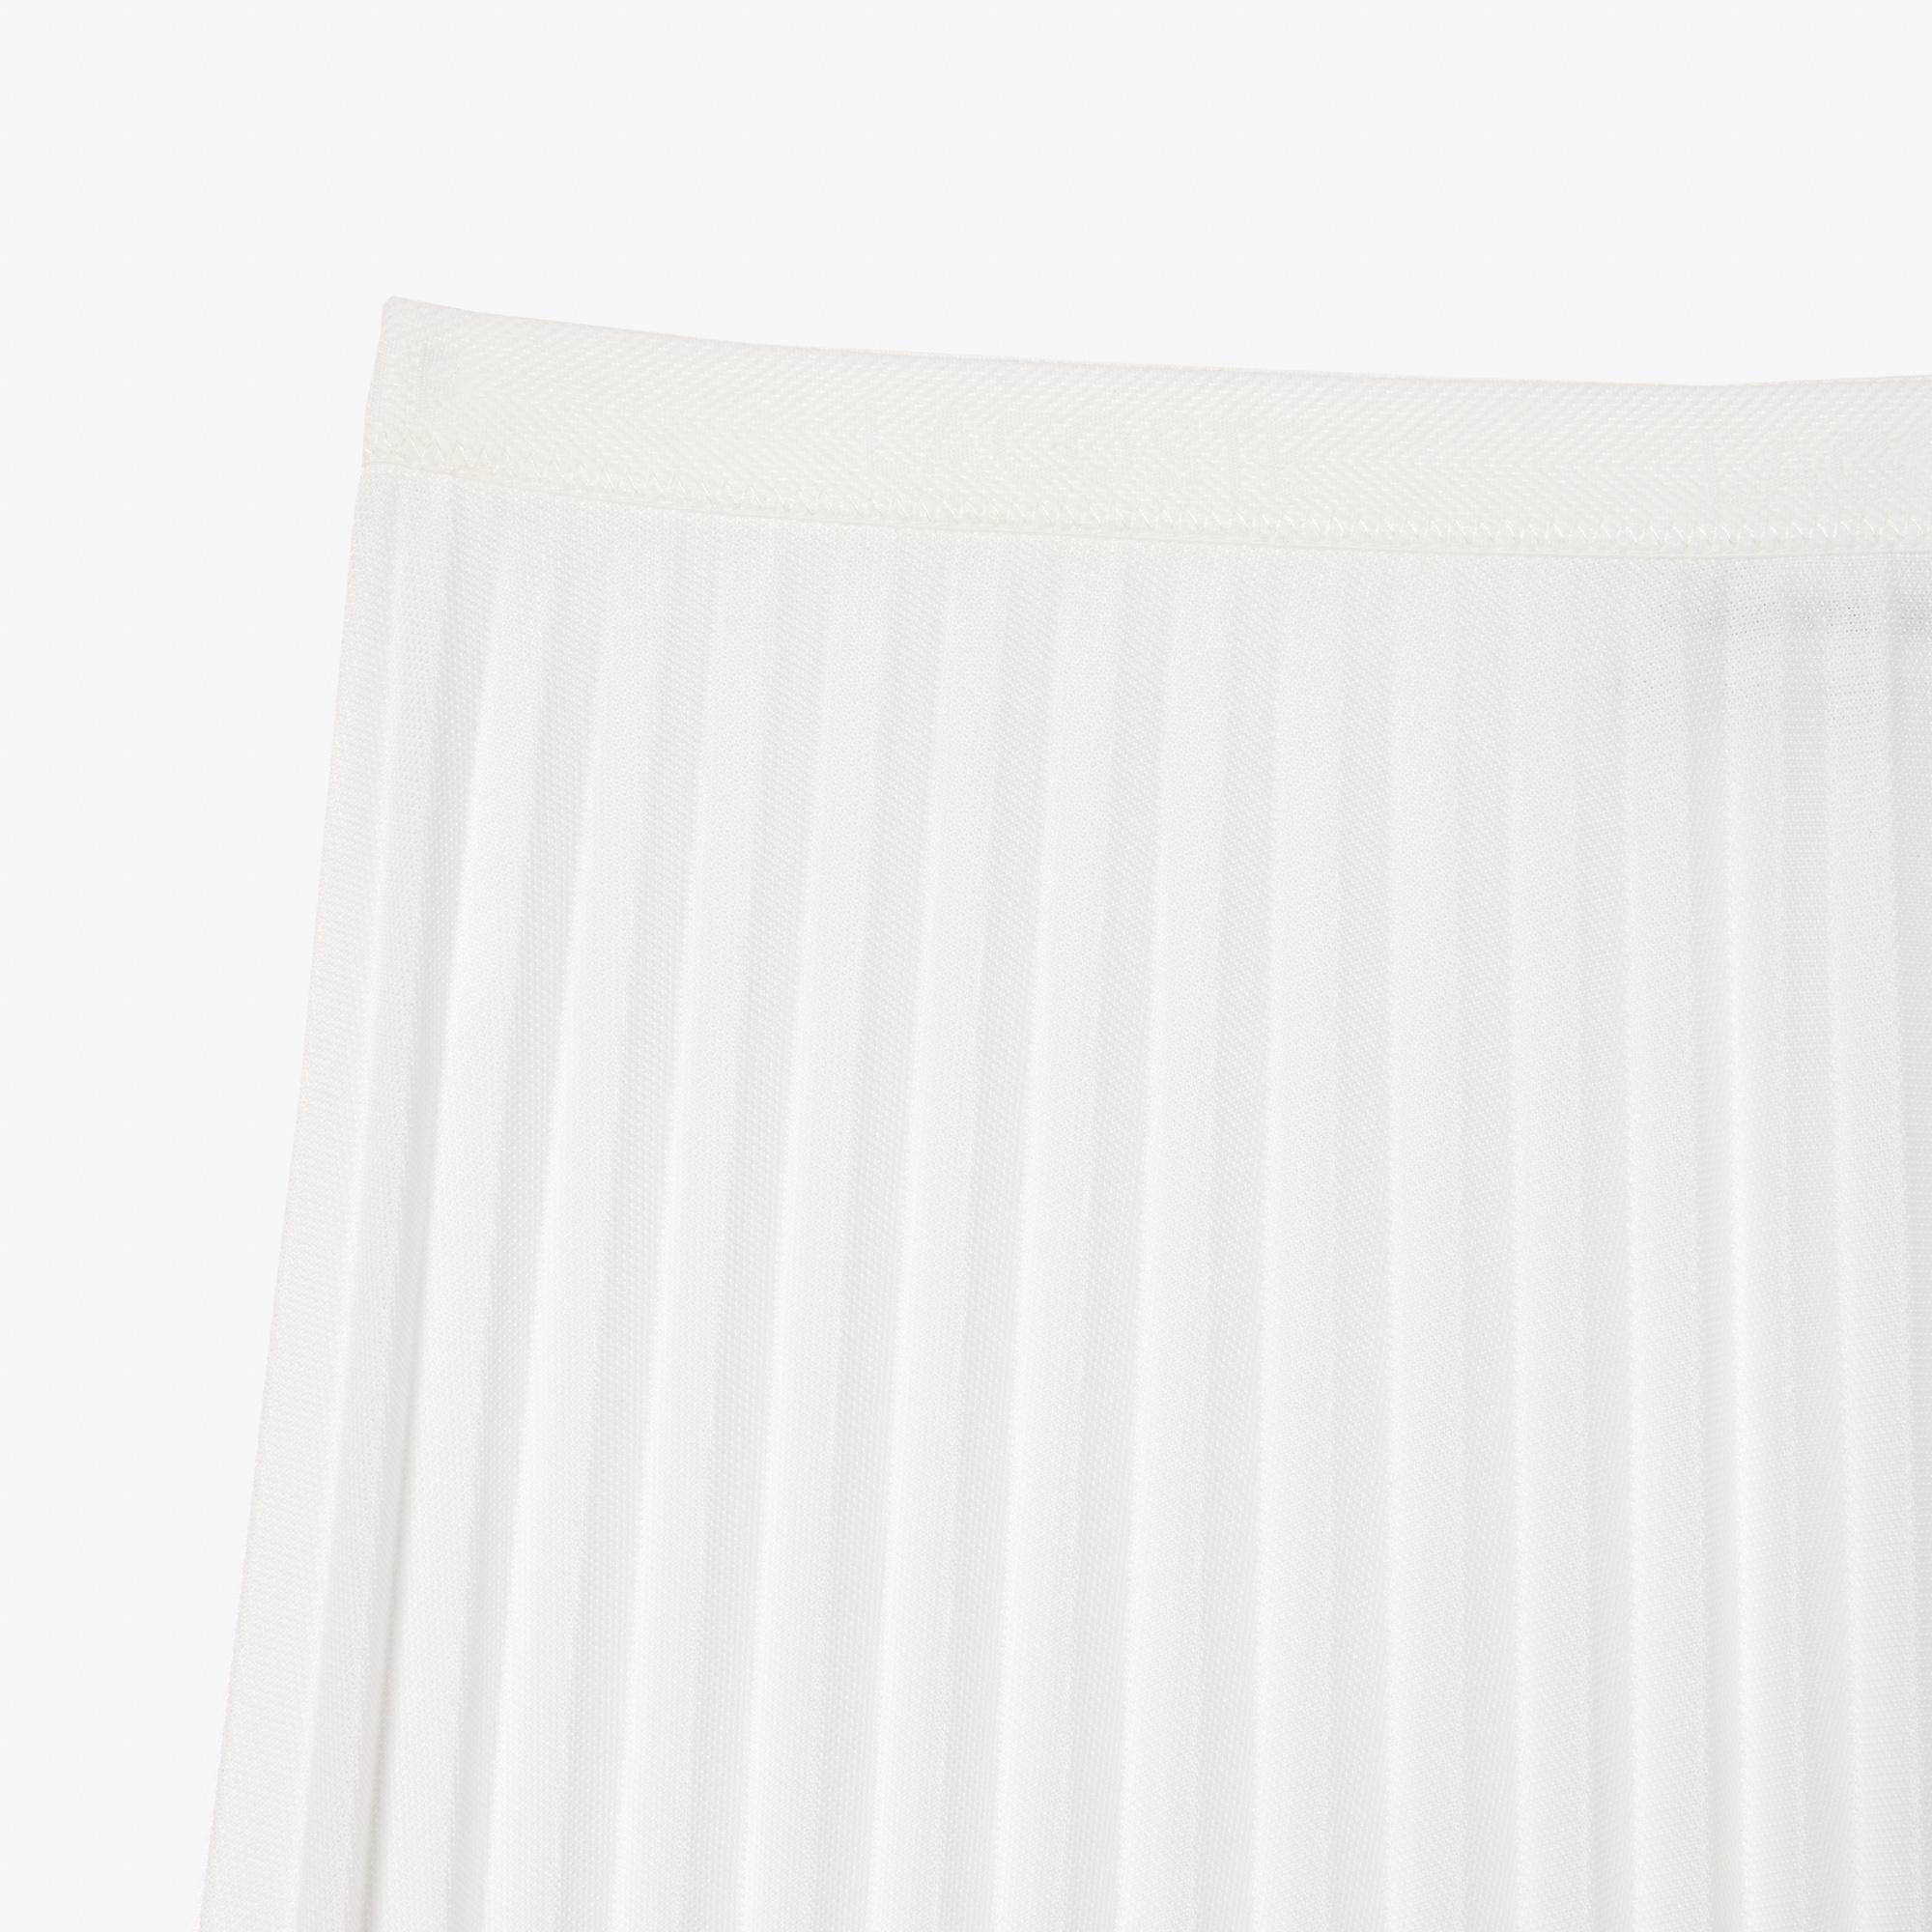 Lacoste damska spódnica plisowana z lejącego materiału z elastycznym paskiem w pasie